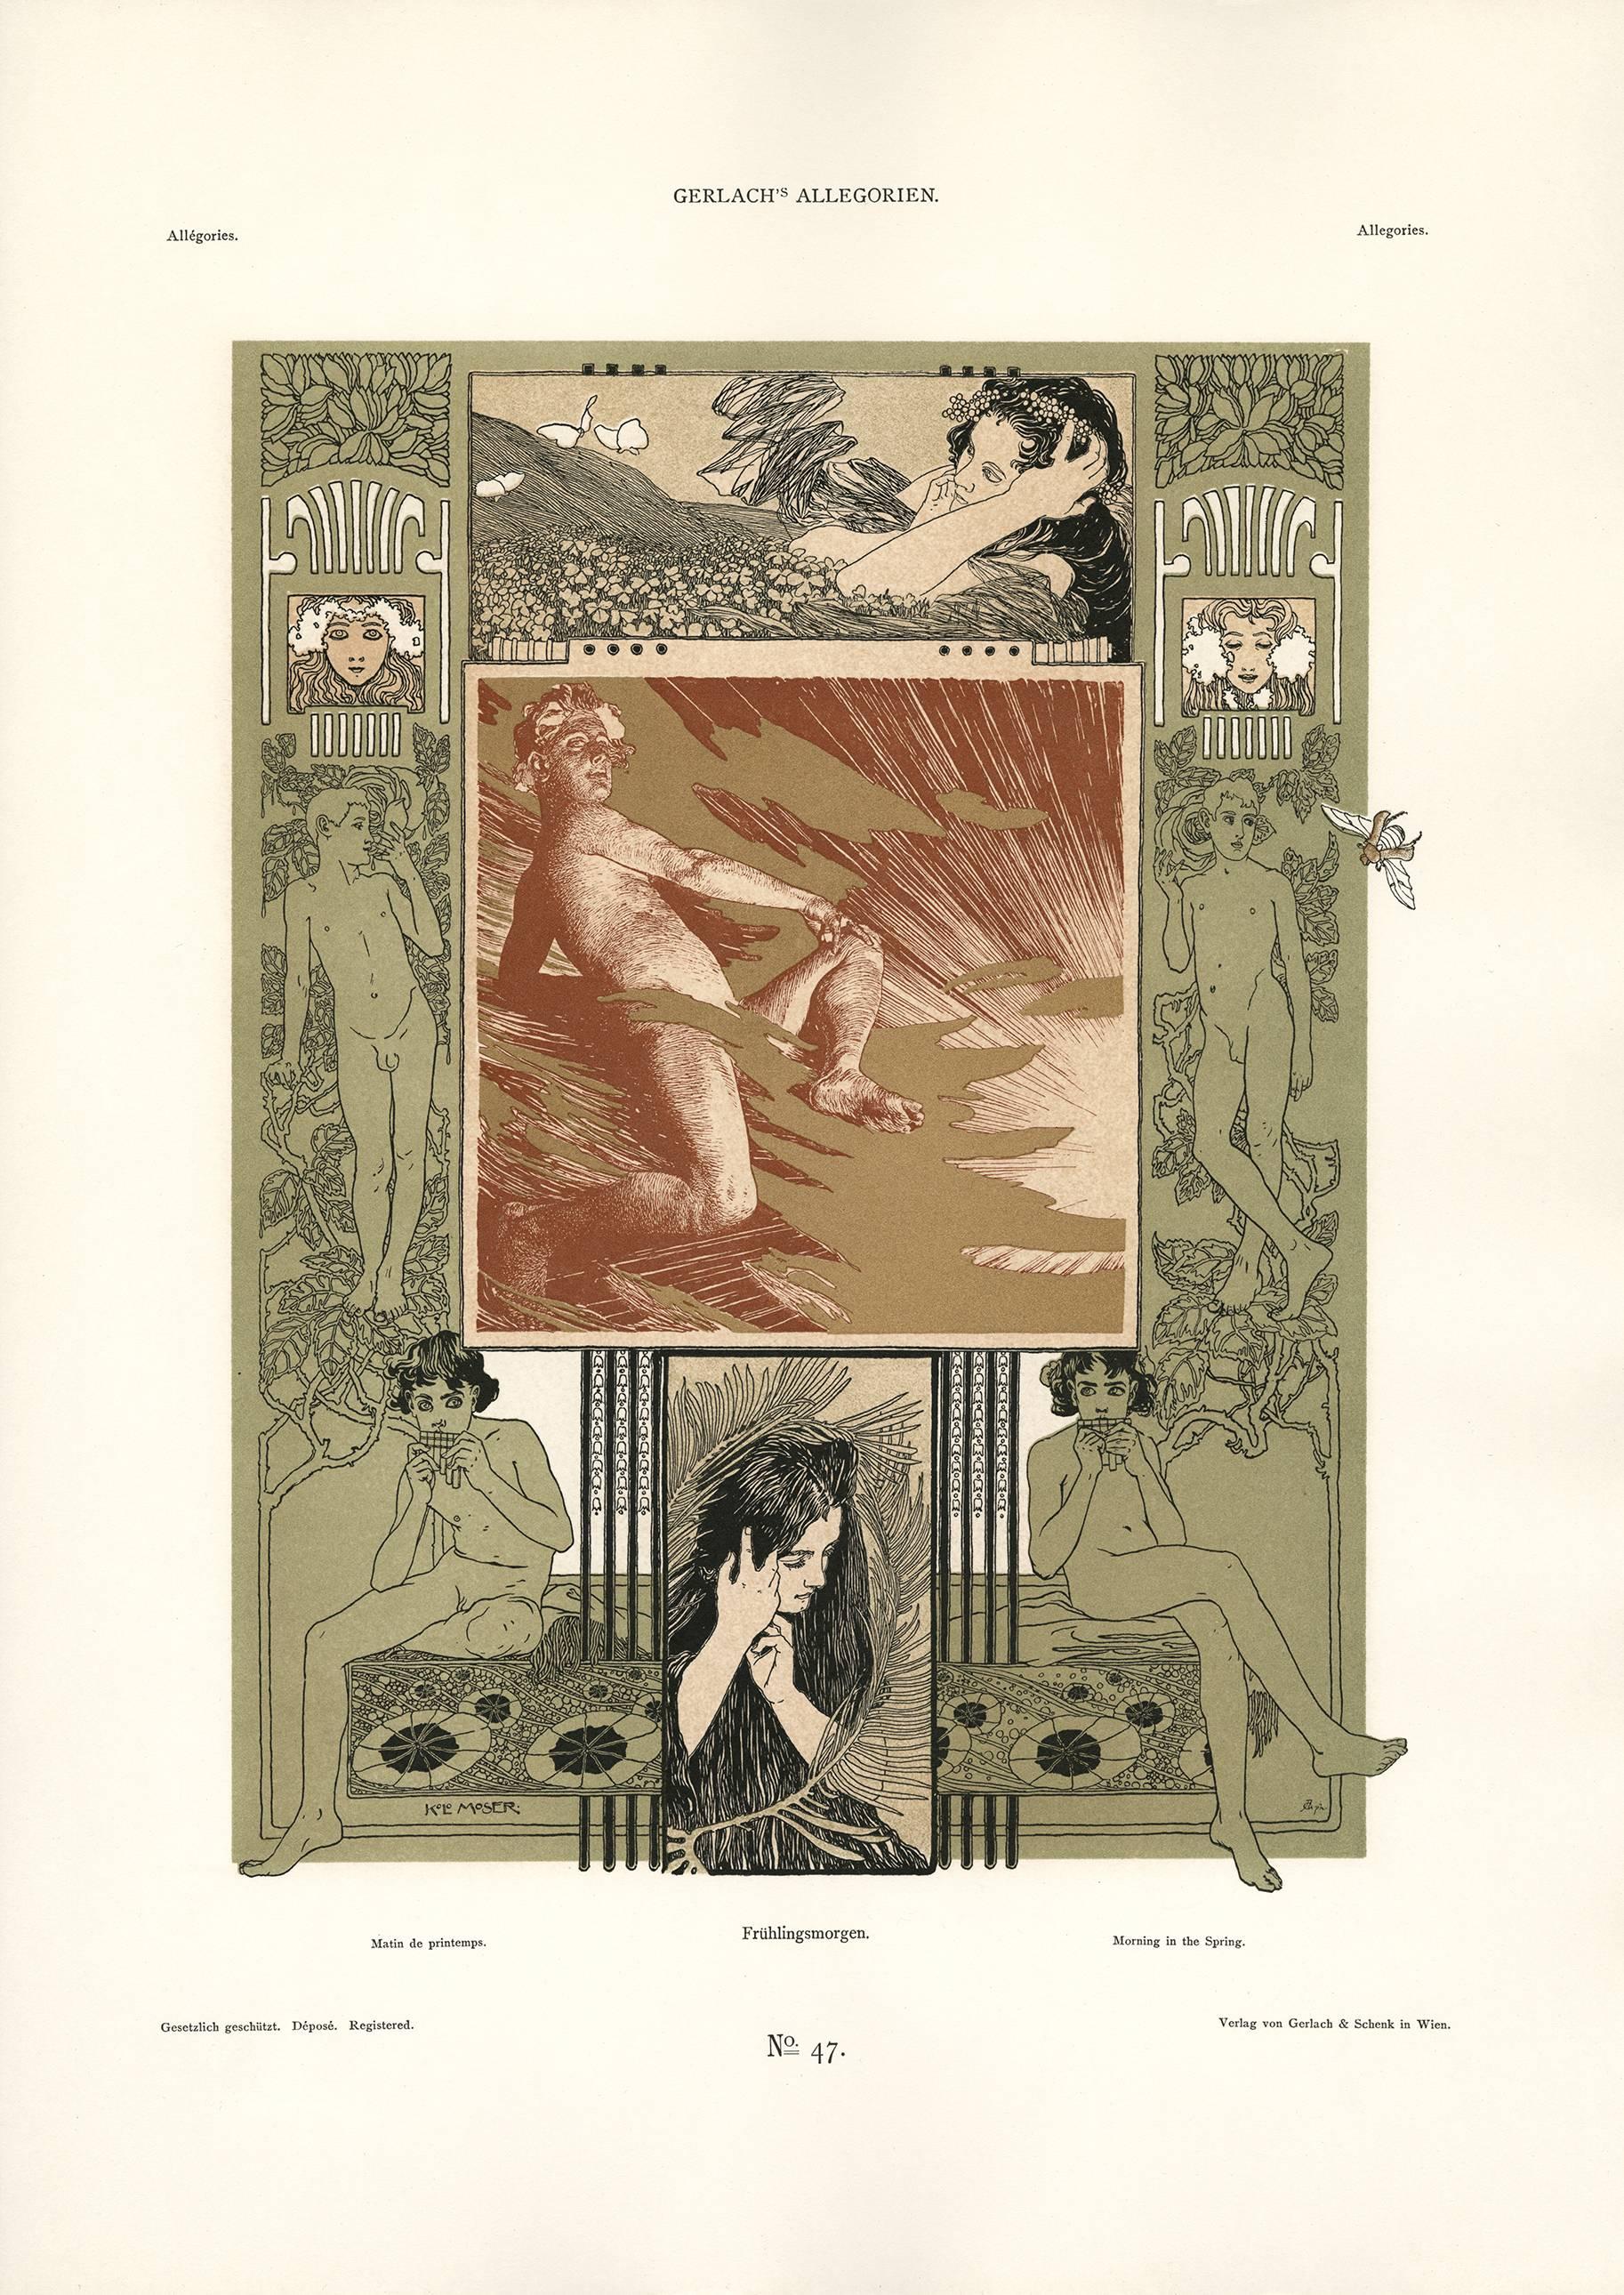 Gerlachs Allegorien Platte #47: "Morgen im Frühling" Lithographie